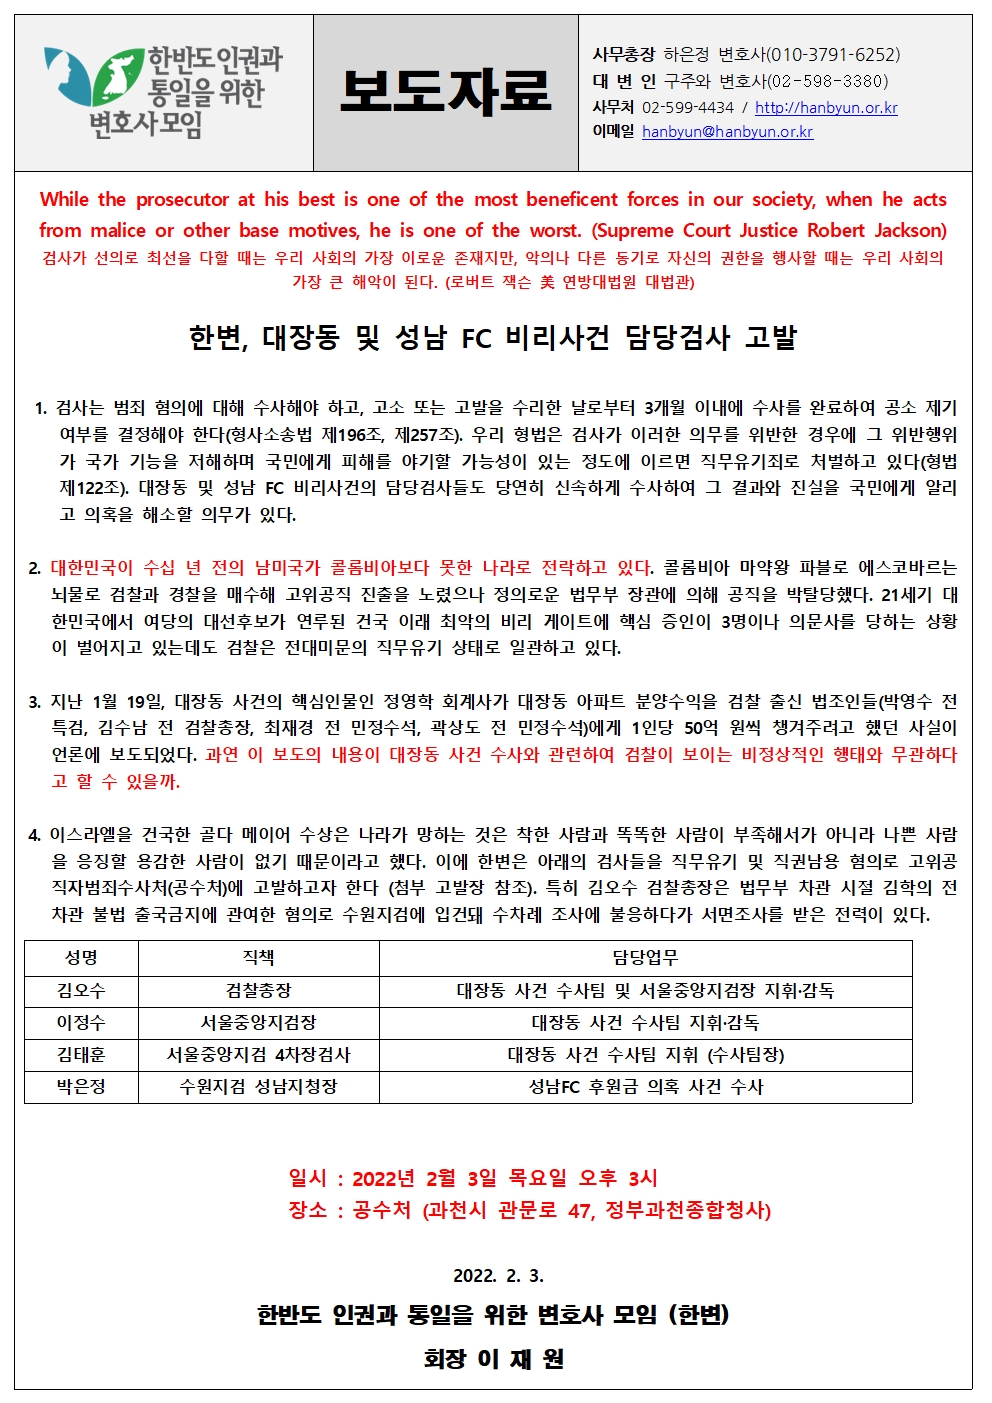 [한변 보도자료] 대장동 및 성남 FC 비리사건 담당검사 직무유기 등 고발 20220203001.jpg